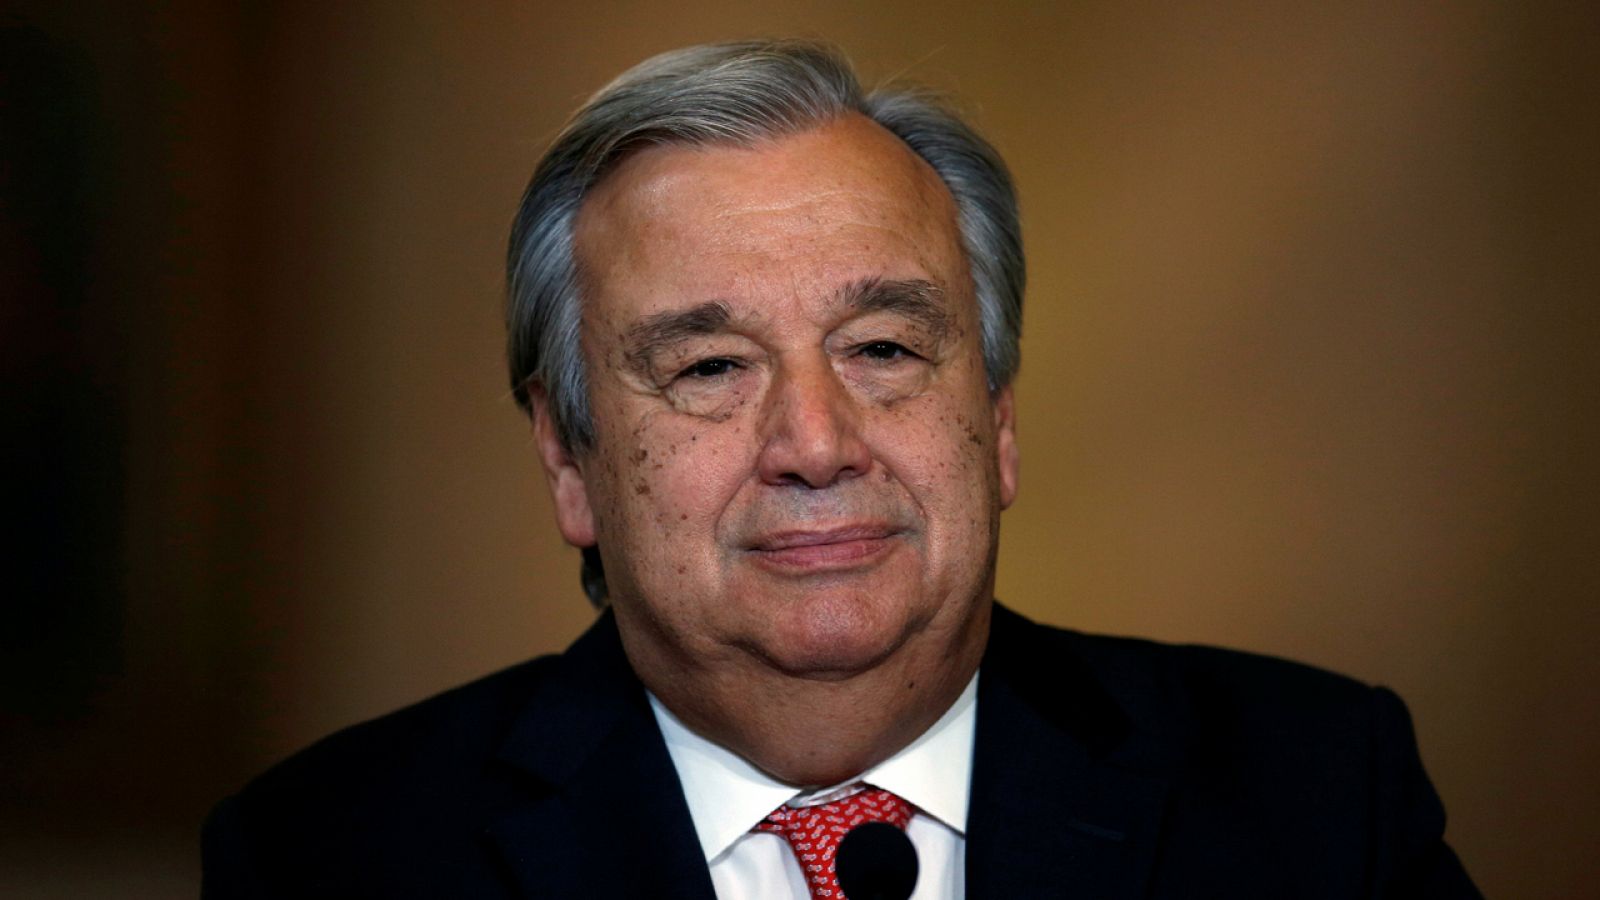 El exmandatario portugués Antonio Guterres, sucesor oficial de Ban Ki-moon al frente de la ONU